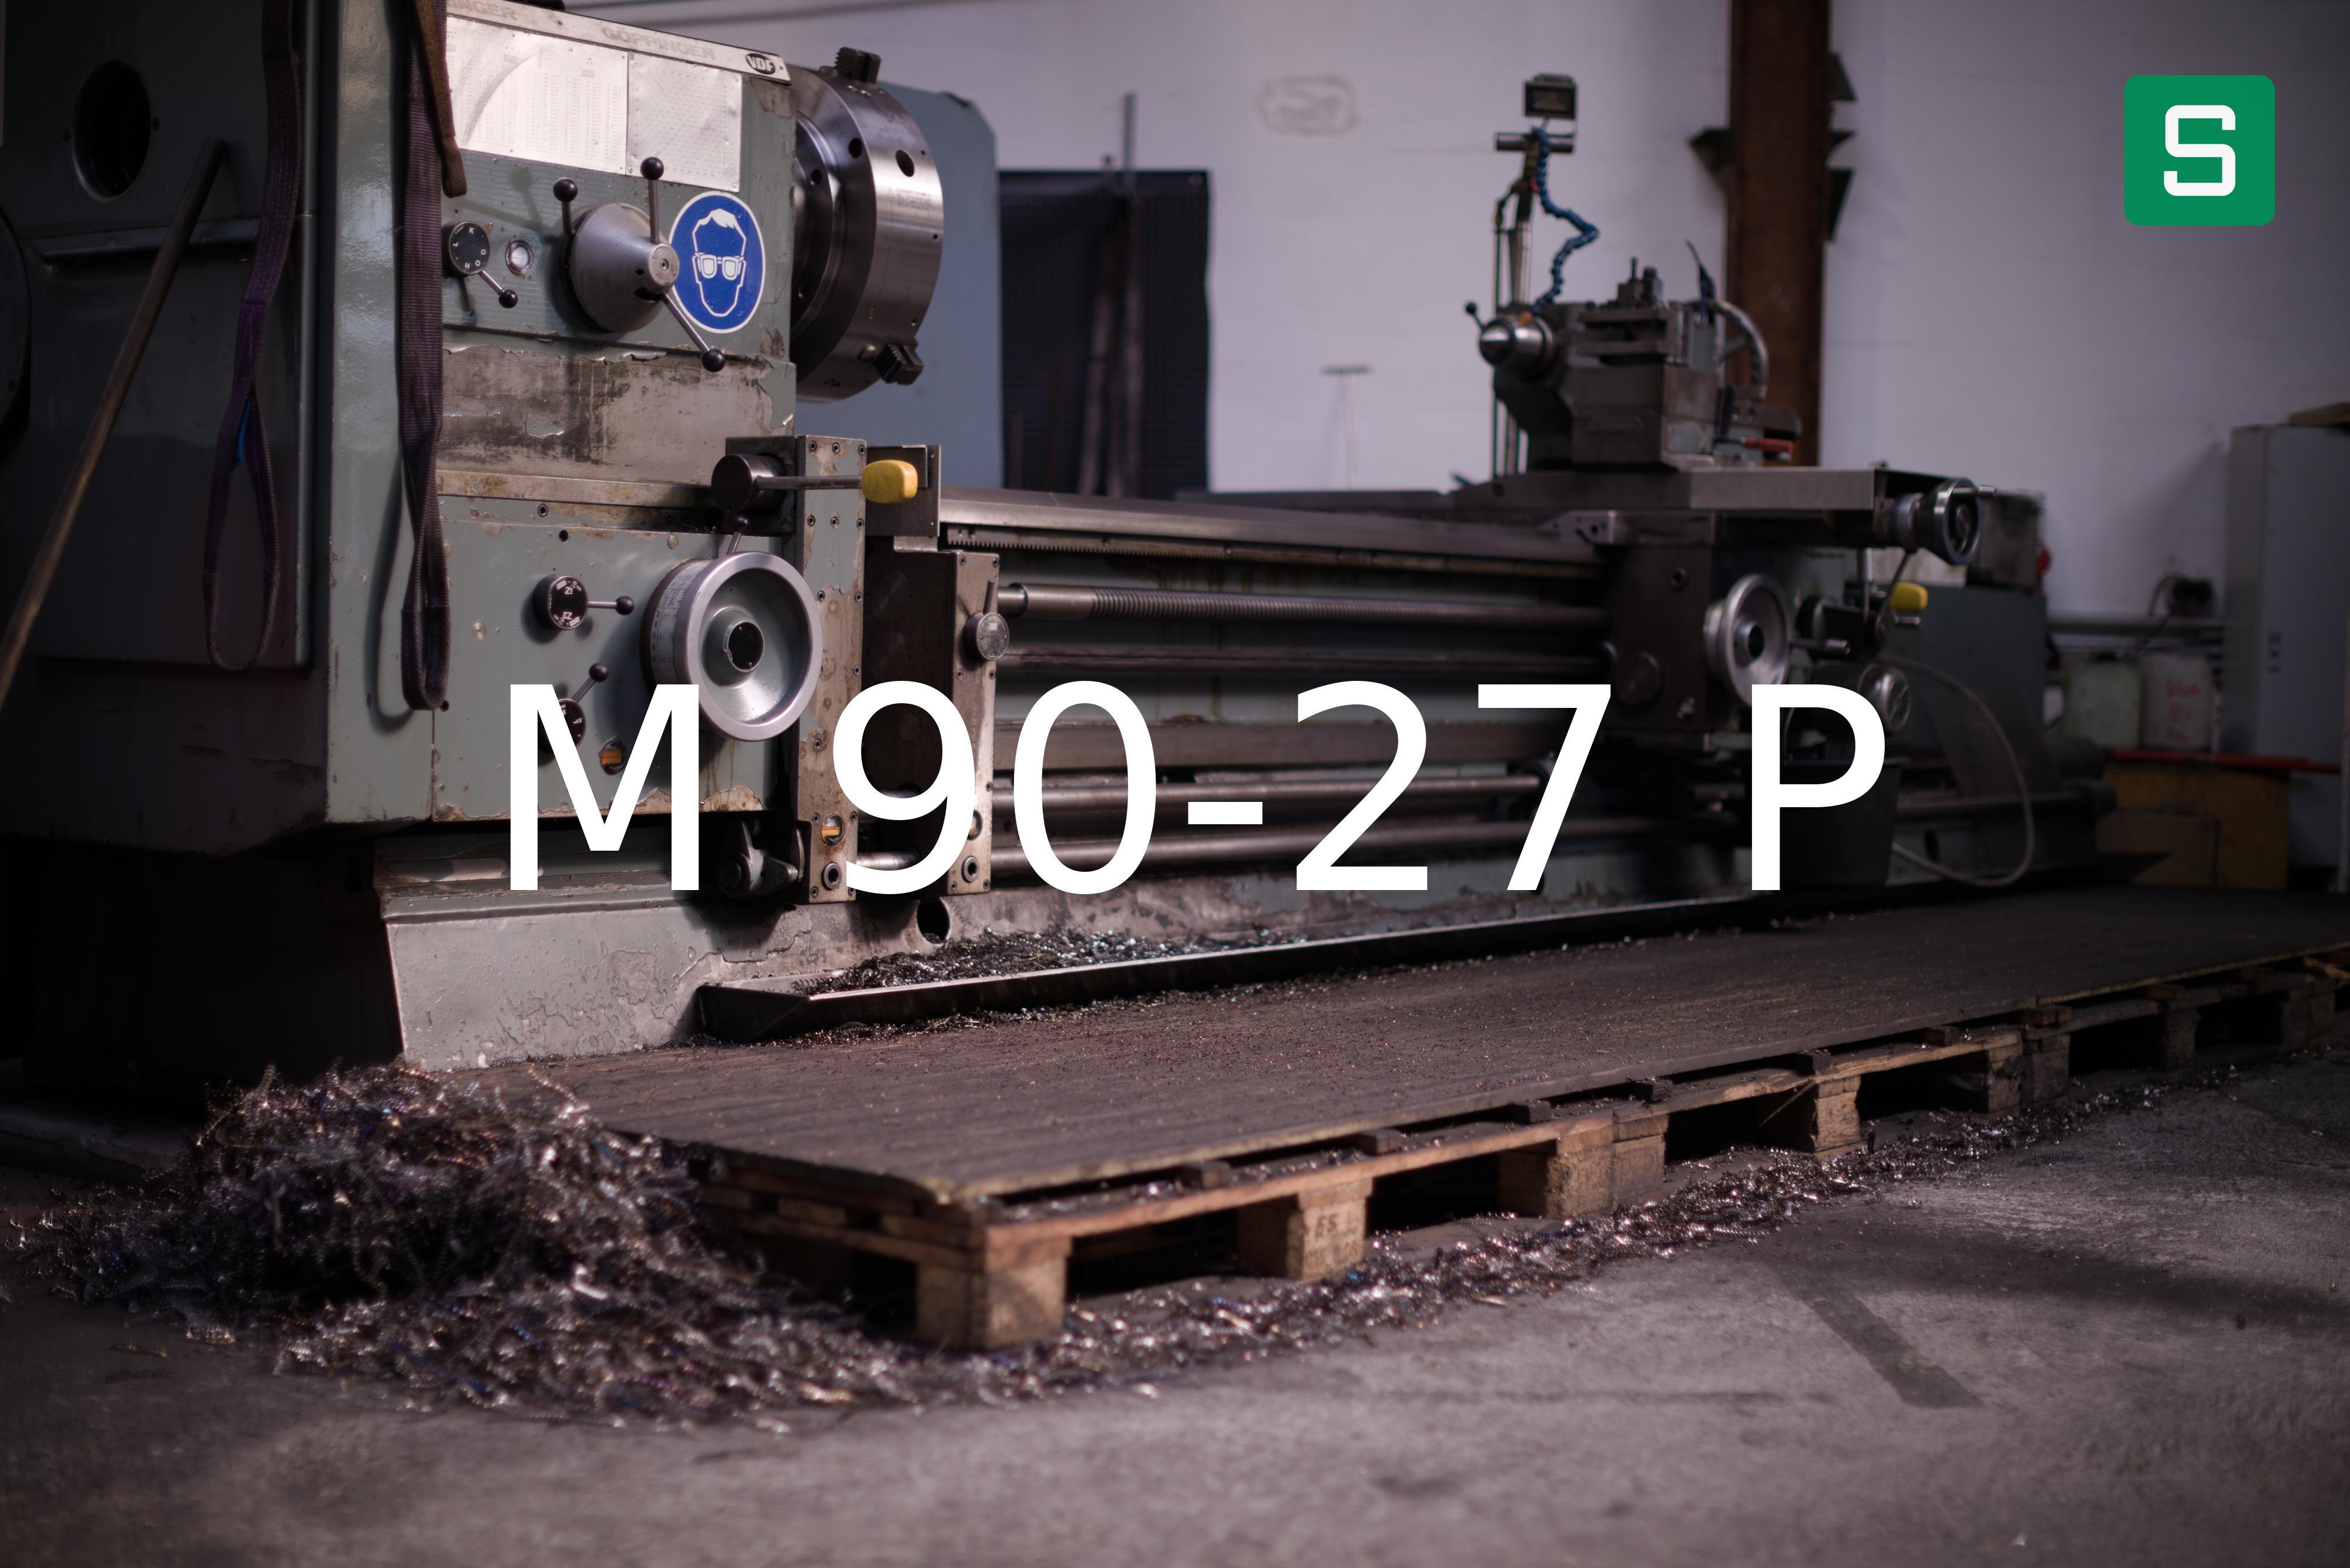 Steel Material: M 90-27 P